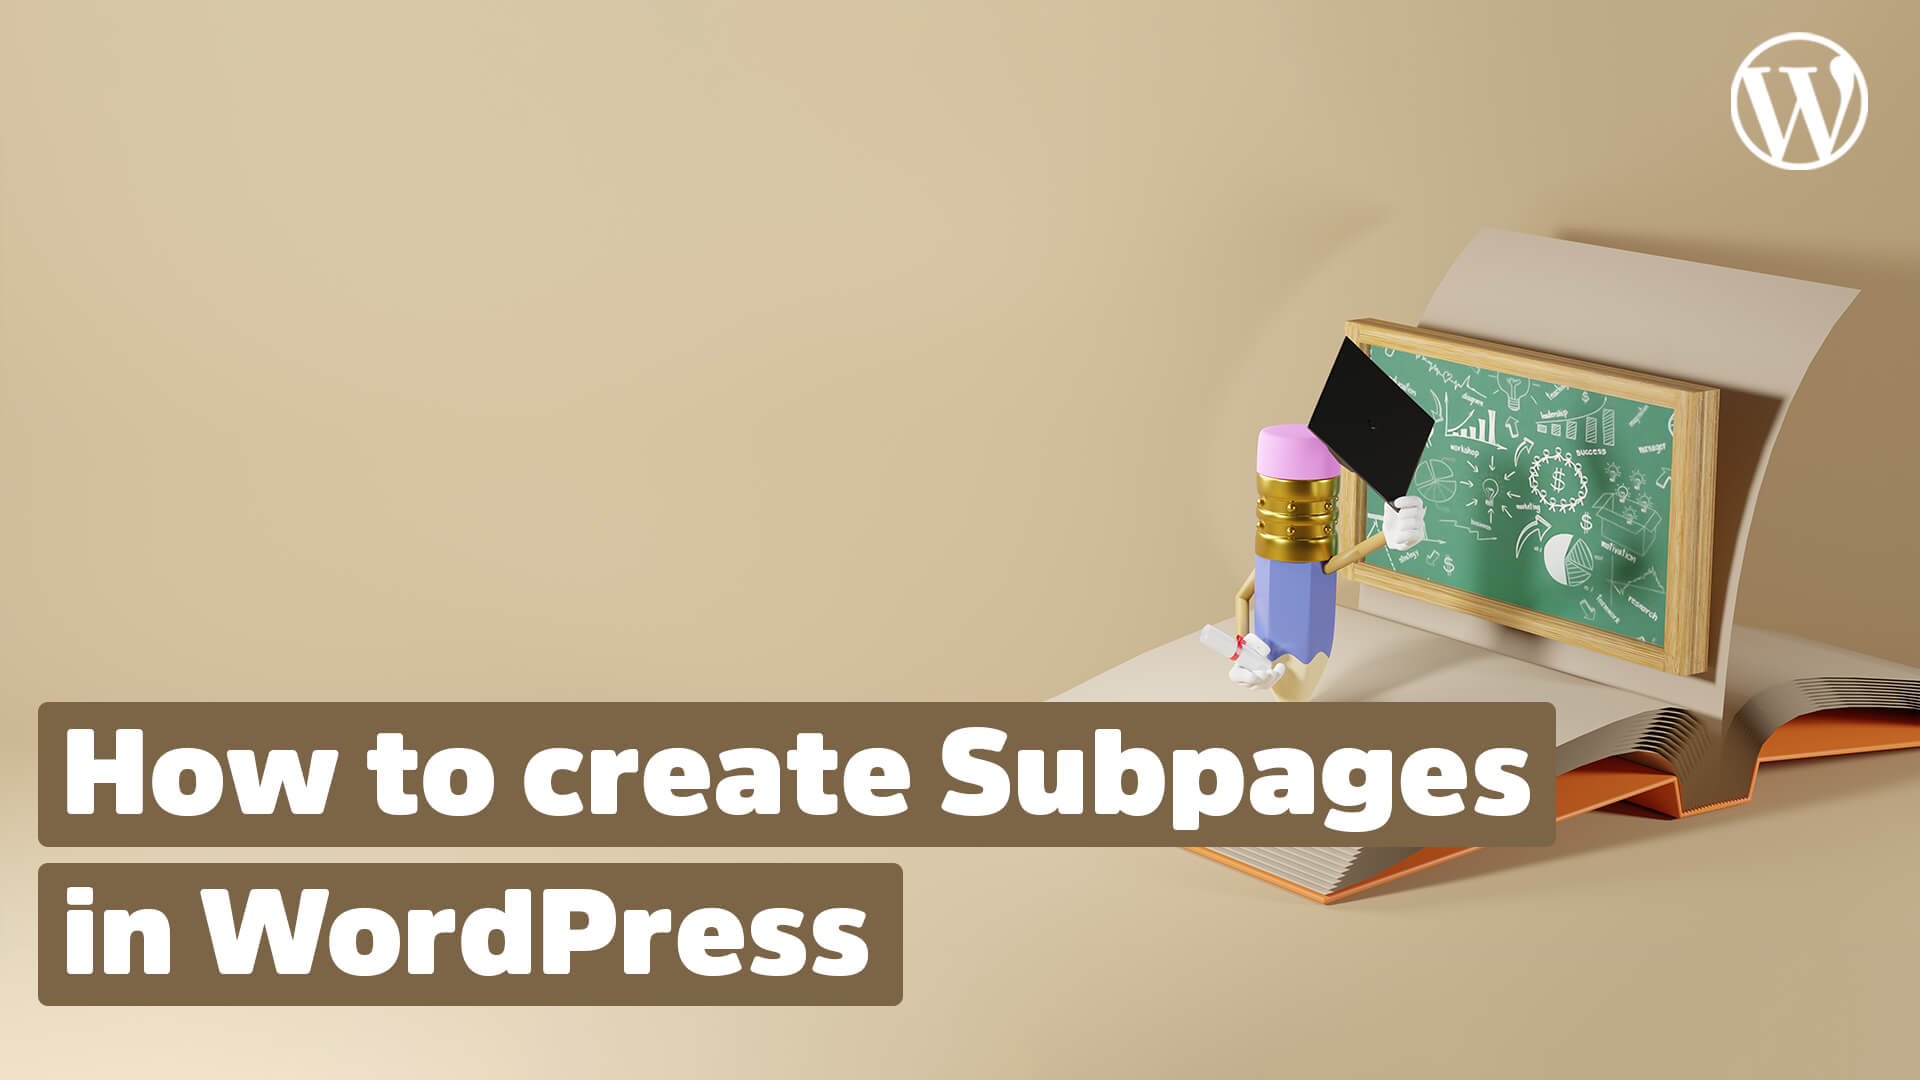 Create Subpage in WordPress